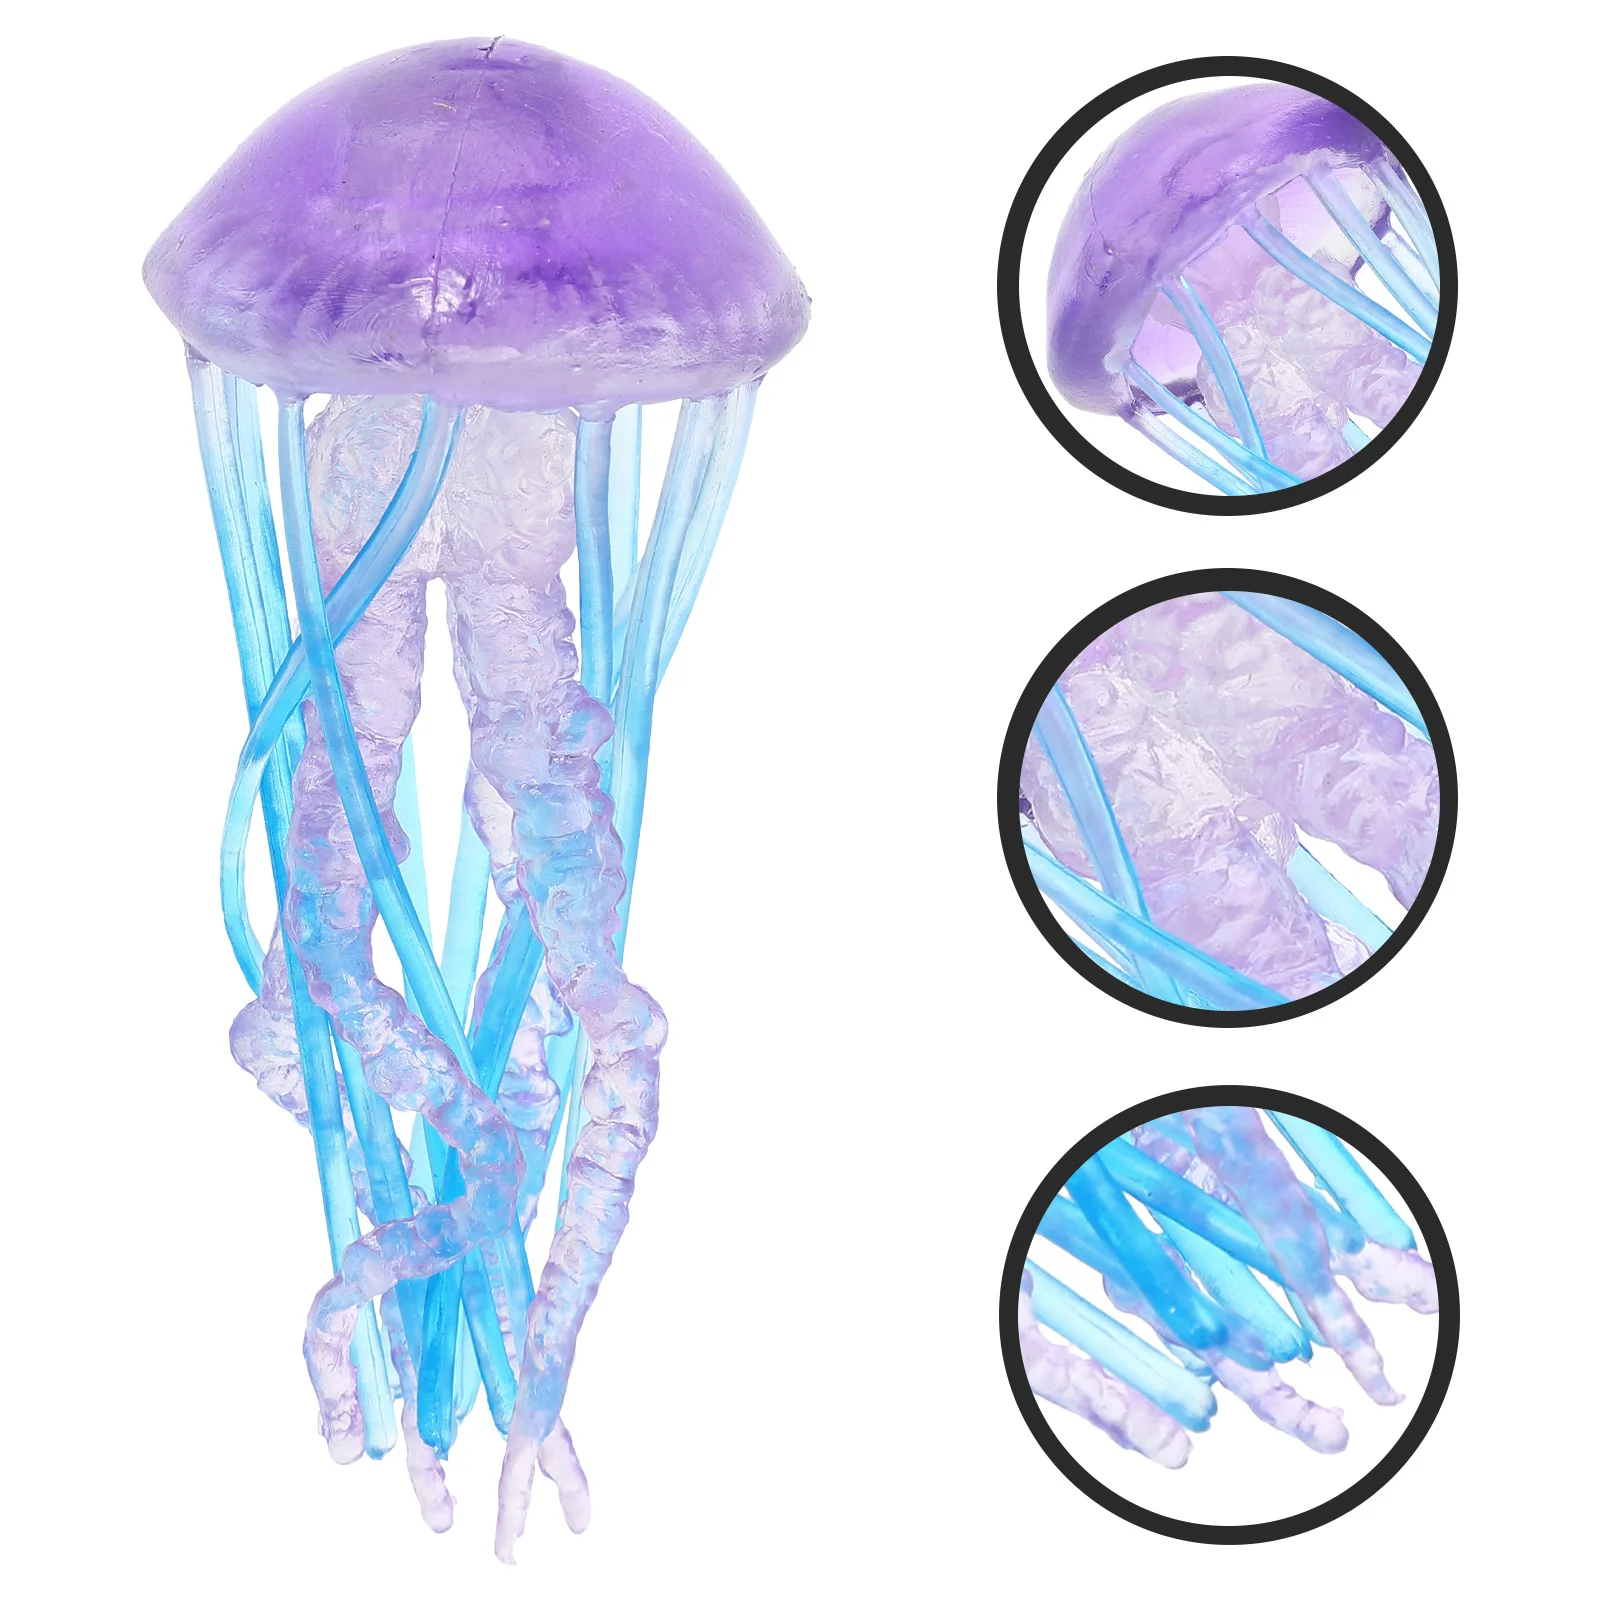 

Настольная декоративная Медуза, фигурки, модель, компактное морское существо, игрушка для океана, нежная пластиковая детская Coraline